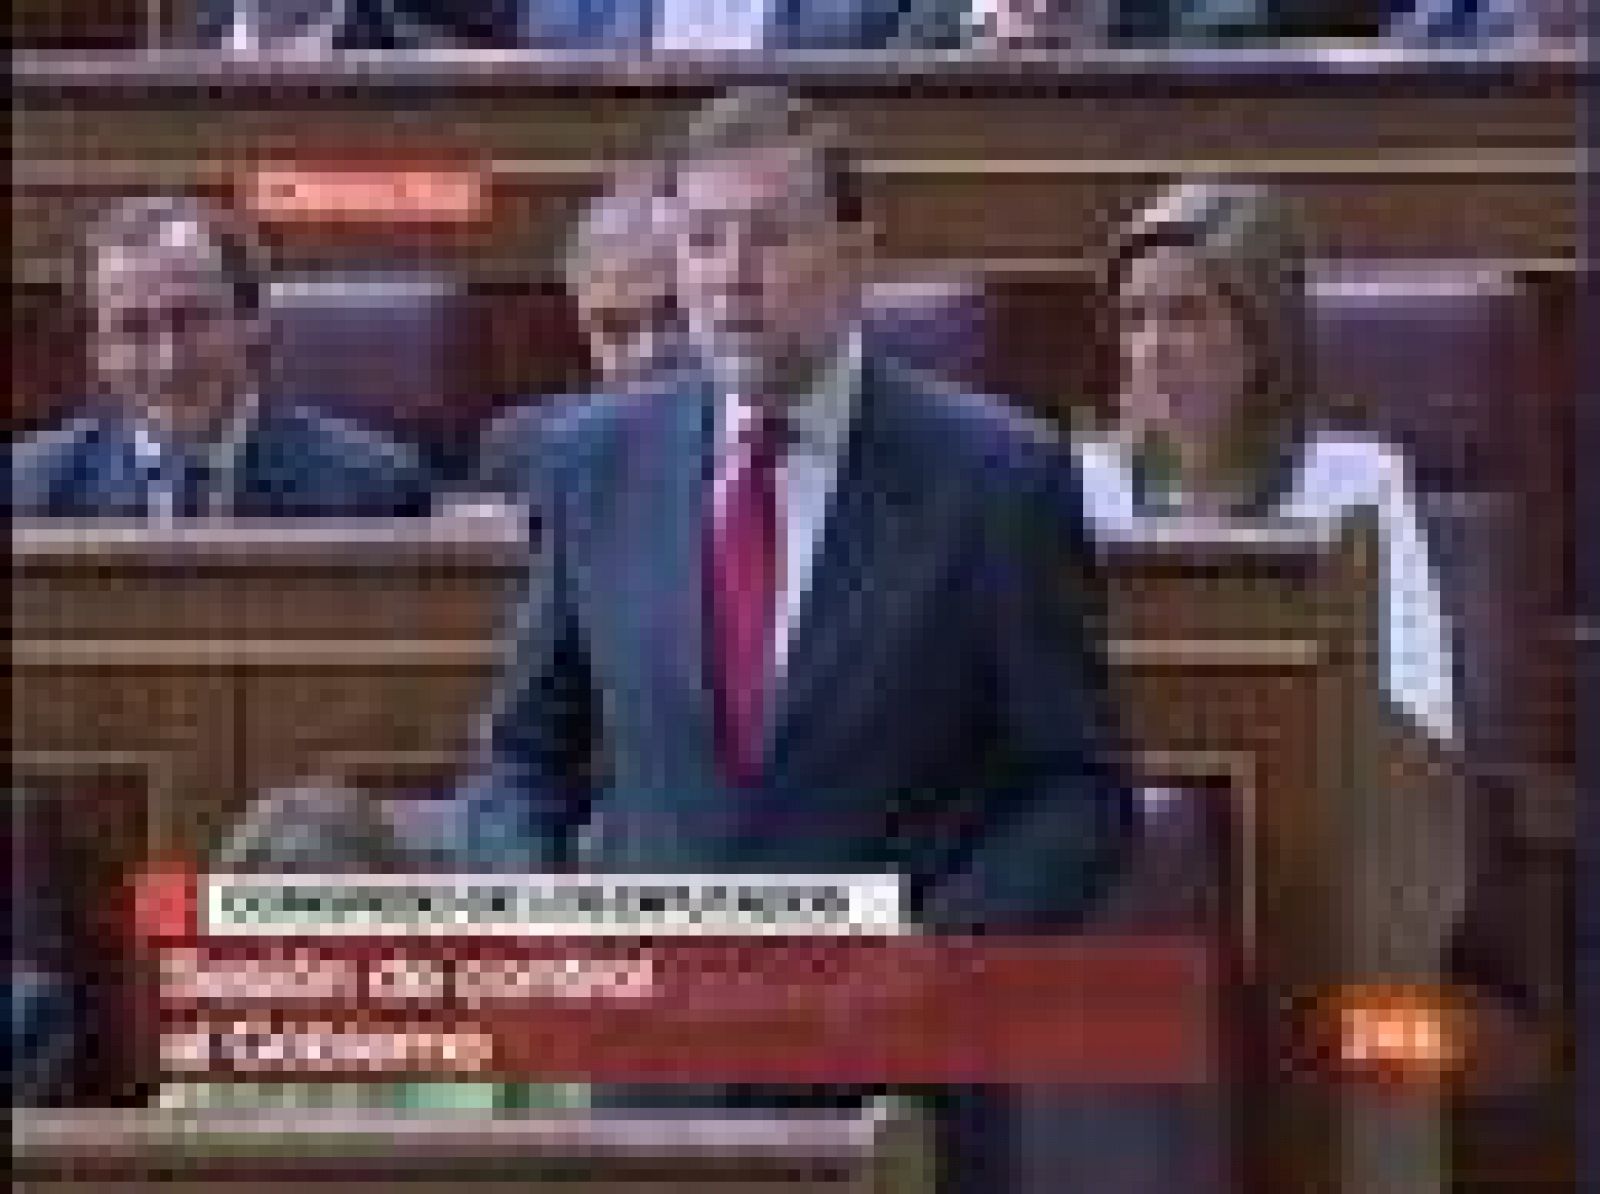 El líder del PP, Mariano Rajoy, ha acusado al presidente del Gobierno, José Luis Rodríguez Zapatero, de no tener un criterio claro en política económica y de "dar banzados continuamente", diciendo una cosa un día "y otra distinta un rato después".  